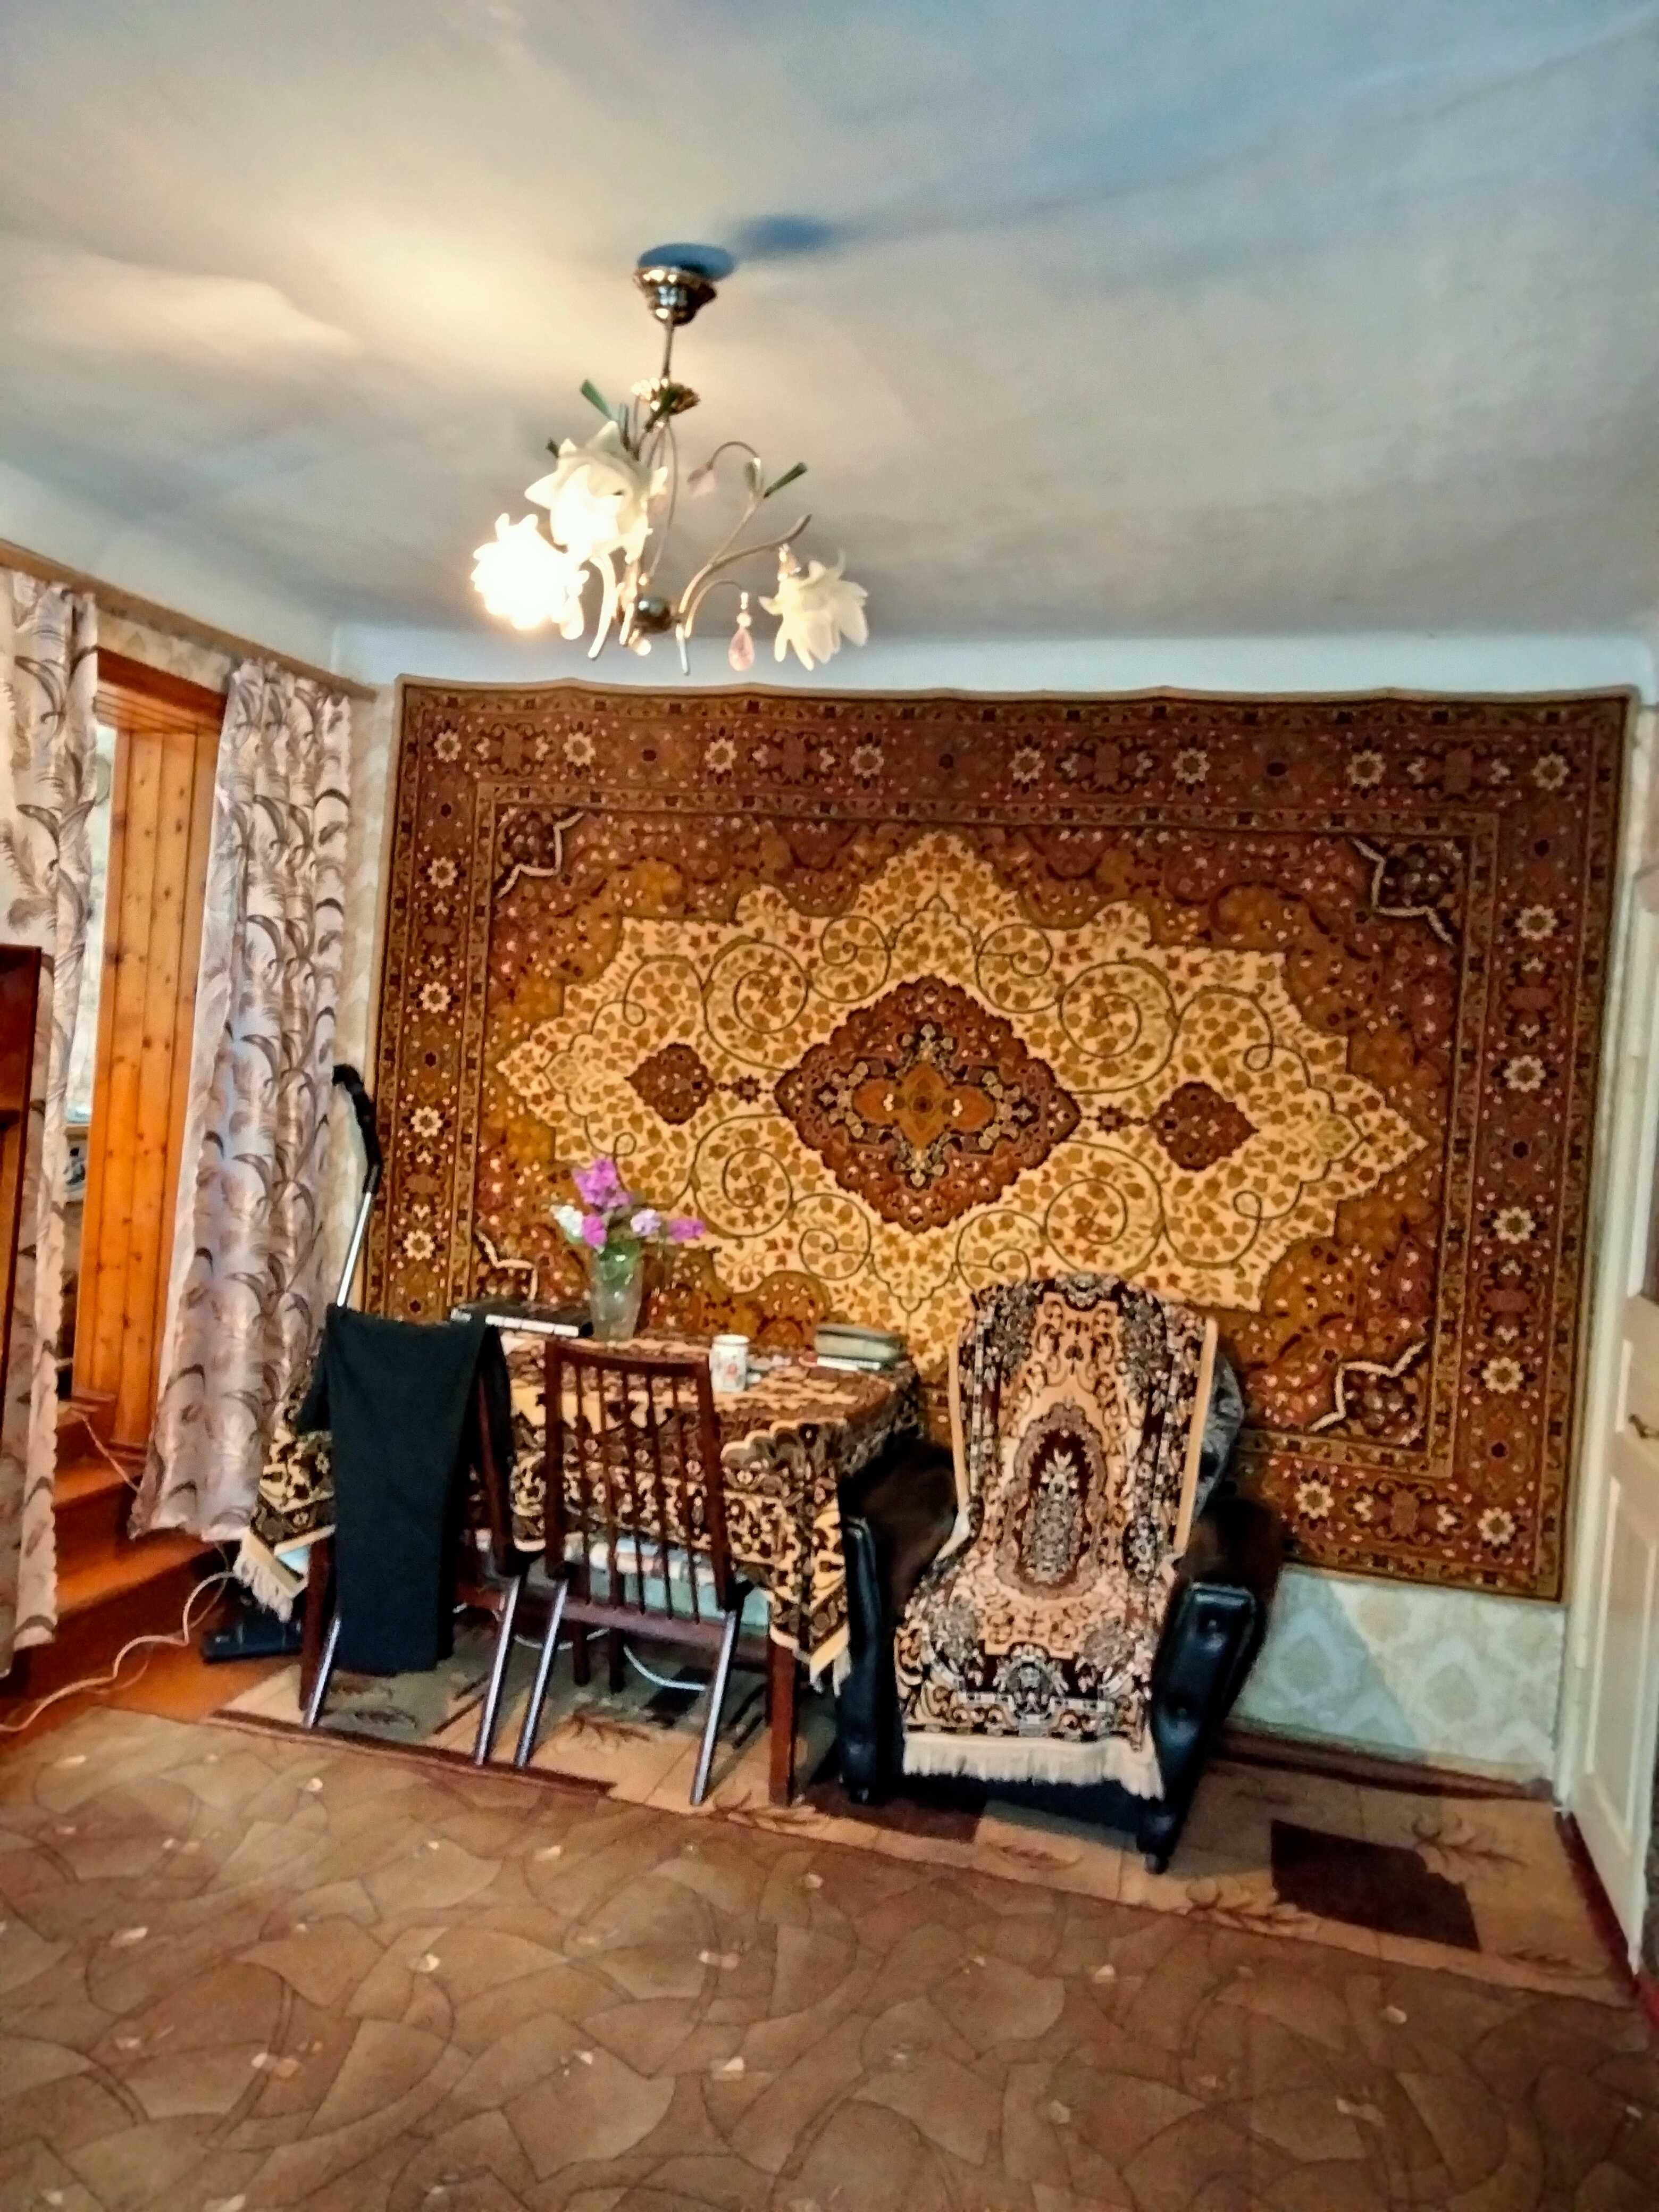 Продам 3-х комнатную квартиру на земле в г. Белгород-Днестровском